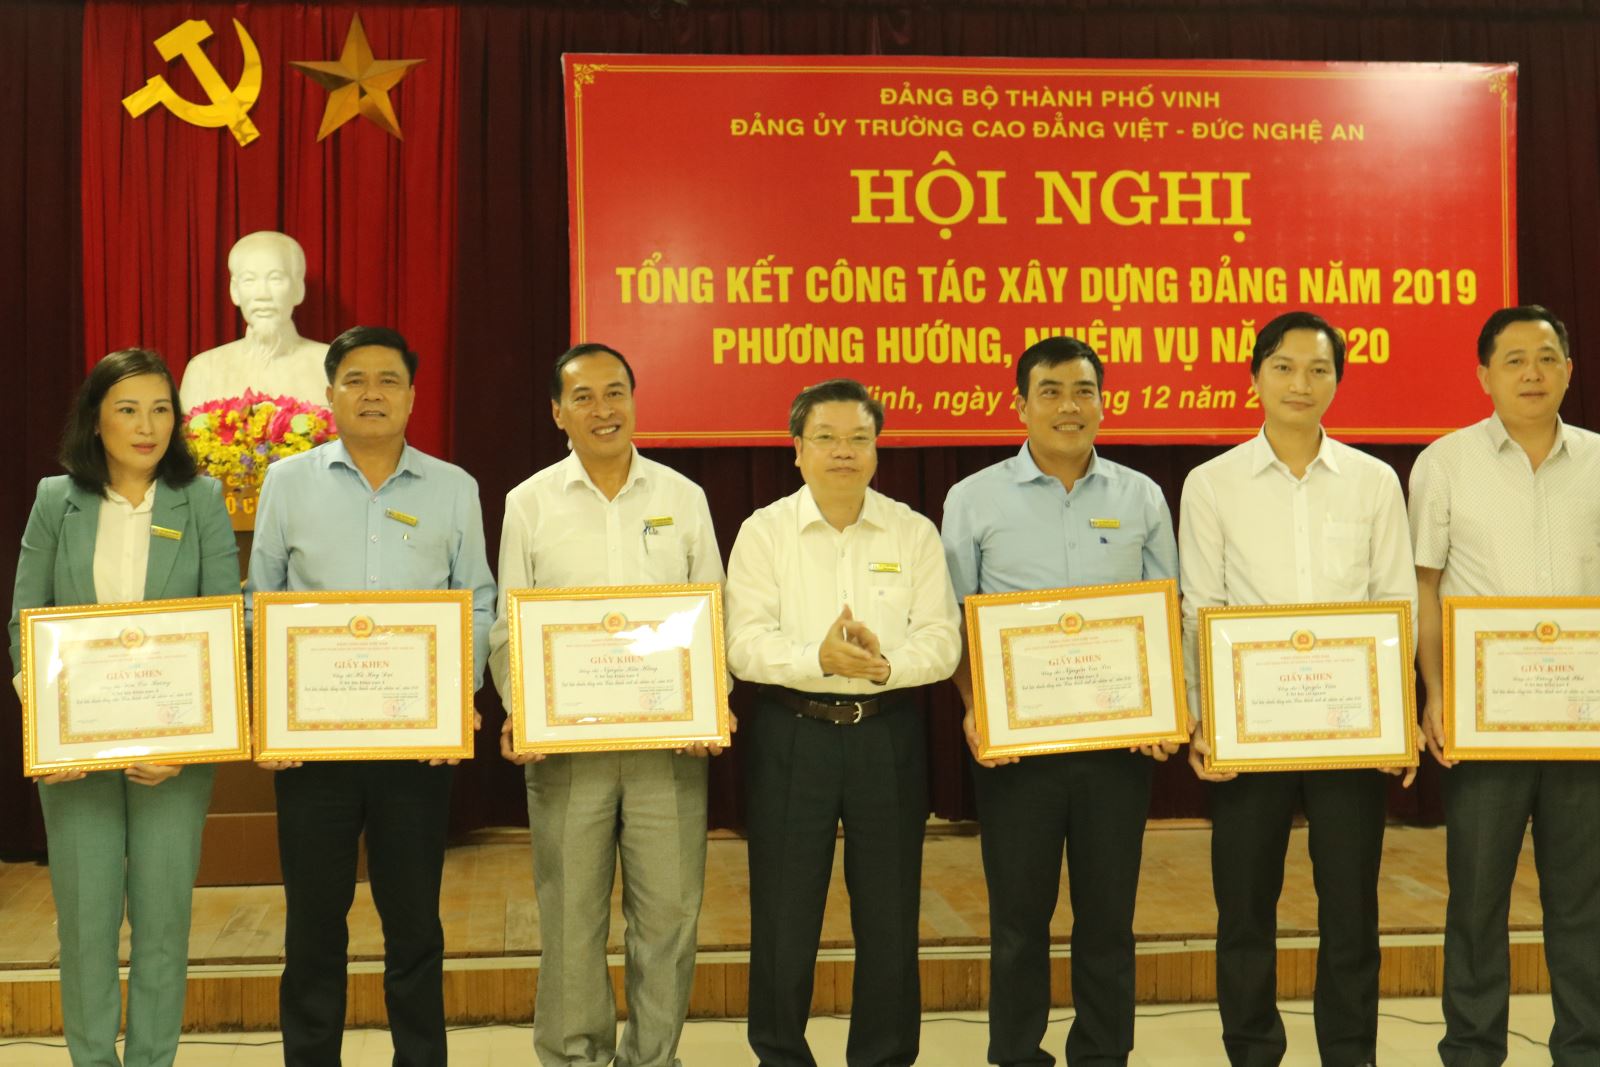 Trường Cao đẳng Việt - Đức Nghệ An tổ chức Hội nghị tổng kết công tác Đảng năm 2019, triển khai nhiệm vụ năm 2020